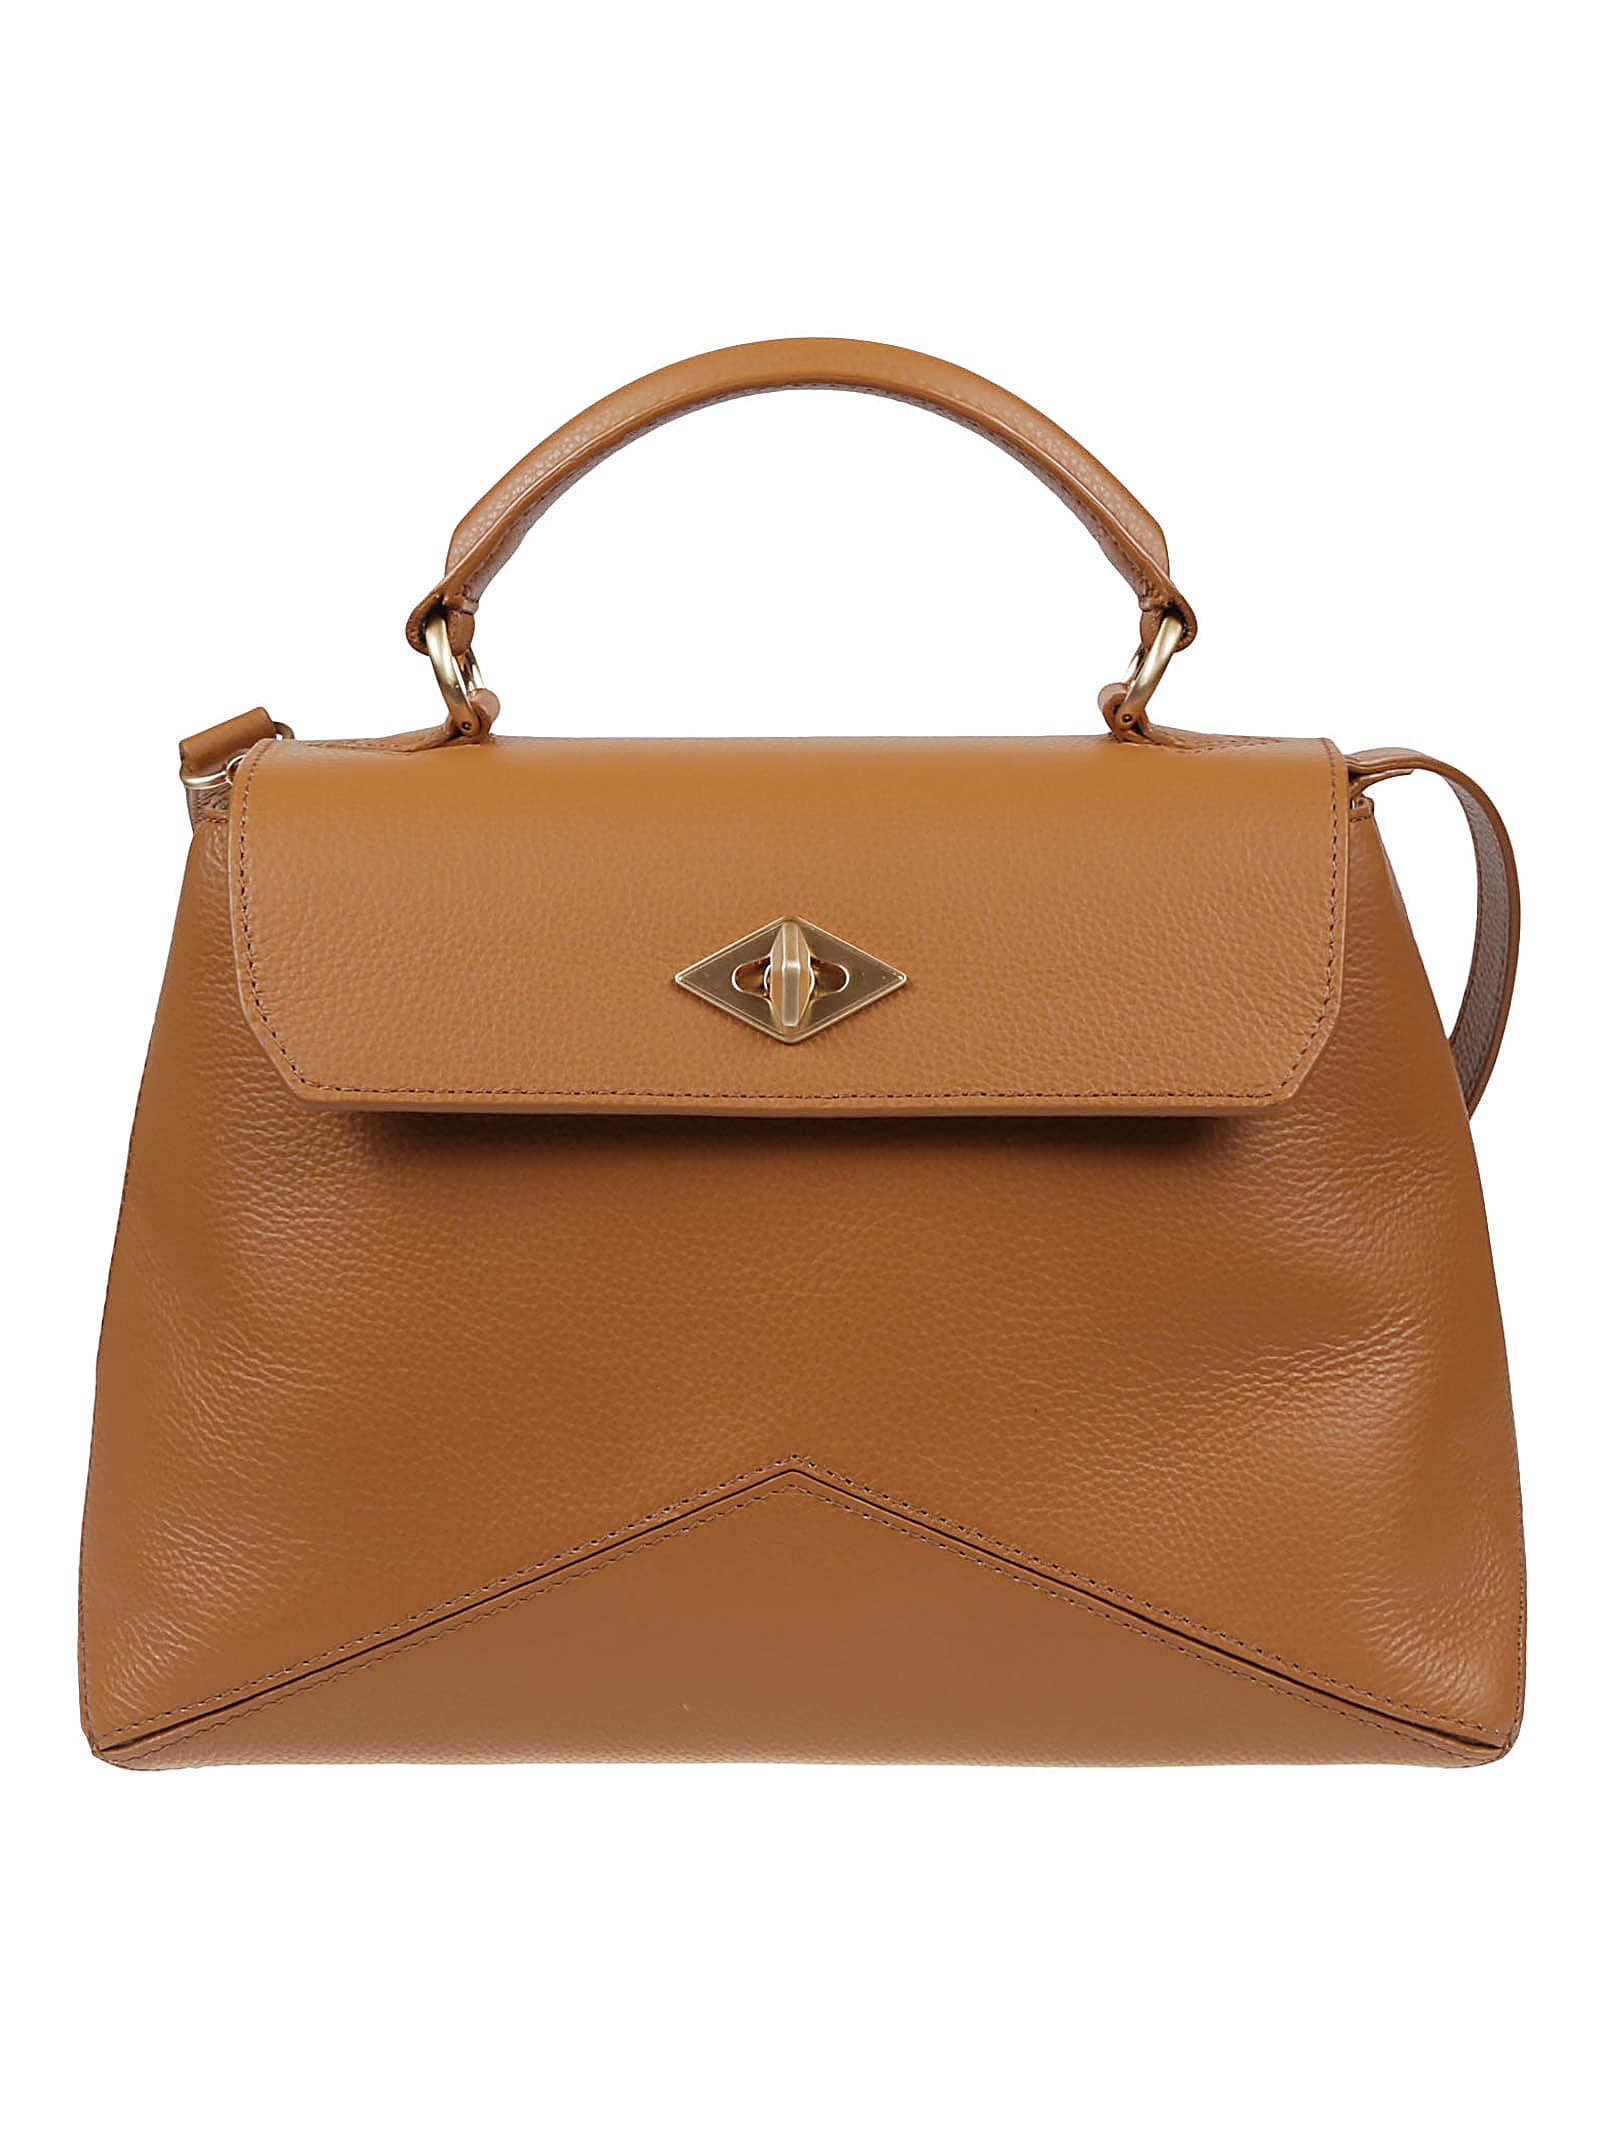 BALLANTYNE Bags for Women | ModeSens